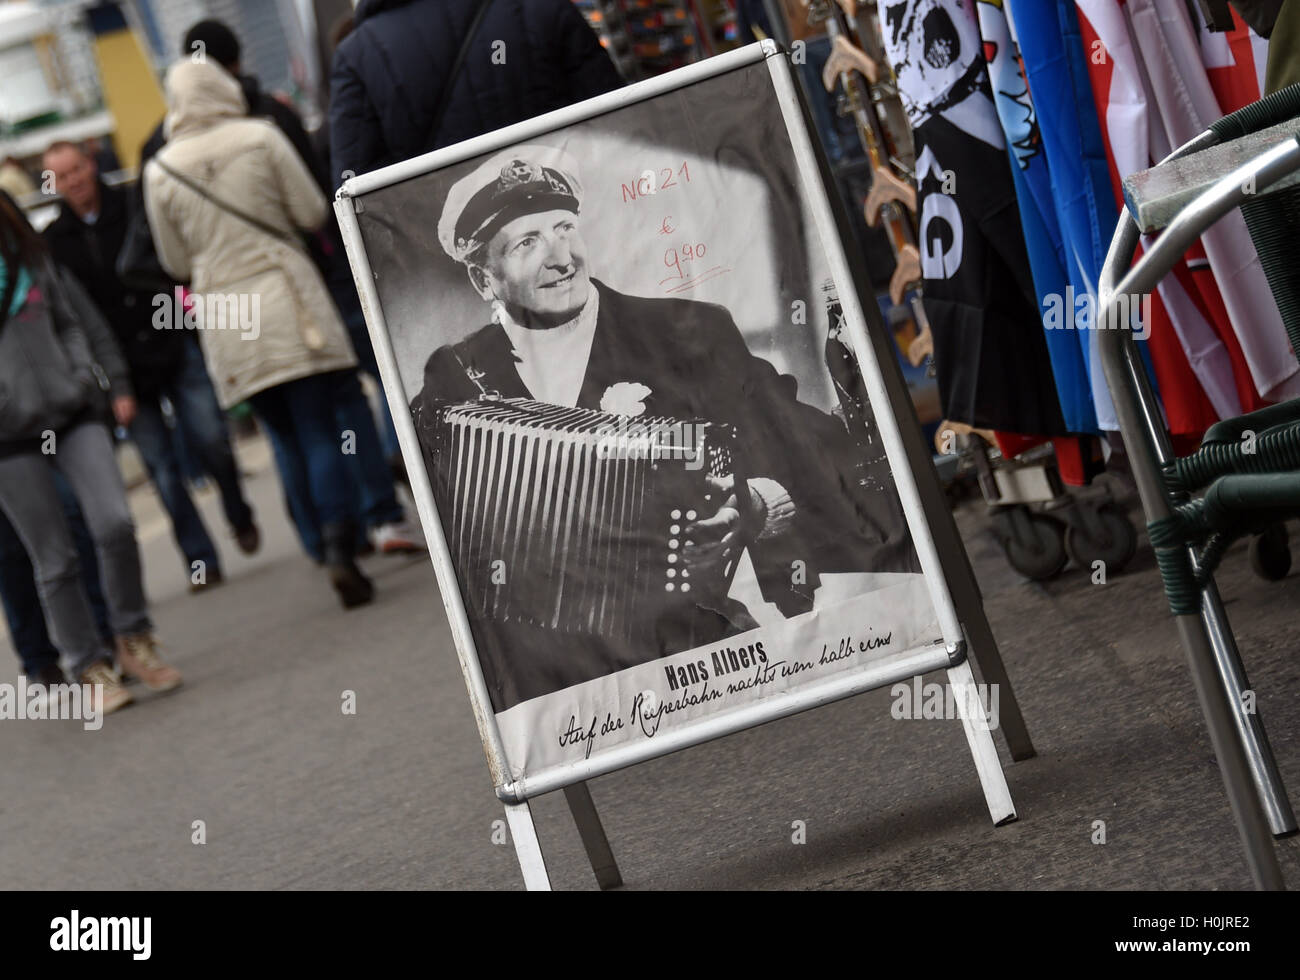 Fichier - Un fichier photo datée du 18 avril 2014 montre les uns flânant passé un Hans Albers poster à Hambourg, Allemagne. Albers est né il y a 125 ans le 22 septembre dans la région de Saint-george de Hambourg. PHOTO : MARCUS BRANDT/DPA Banque D'Images